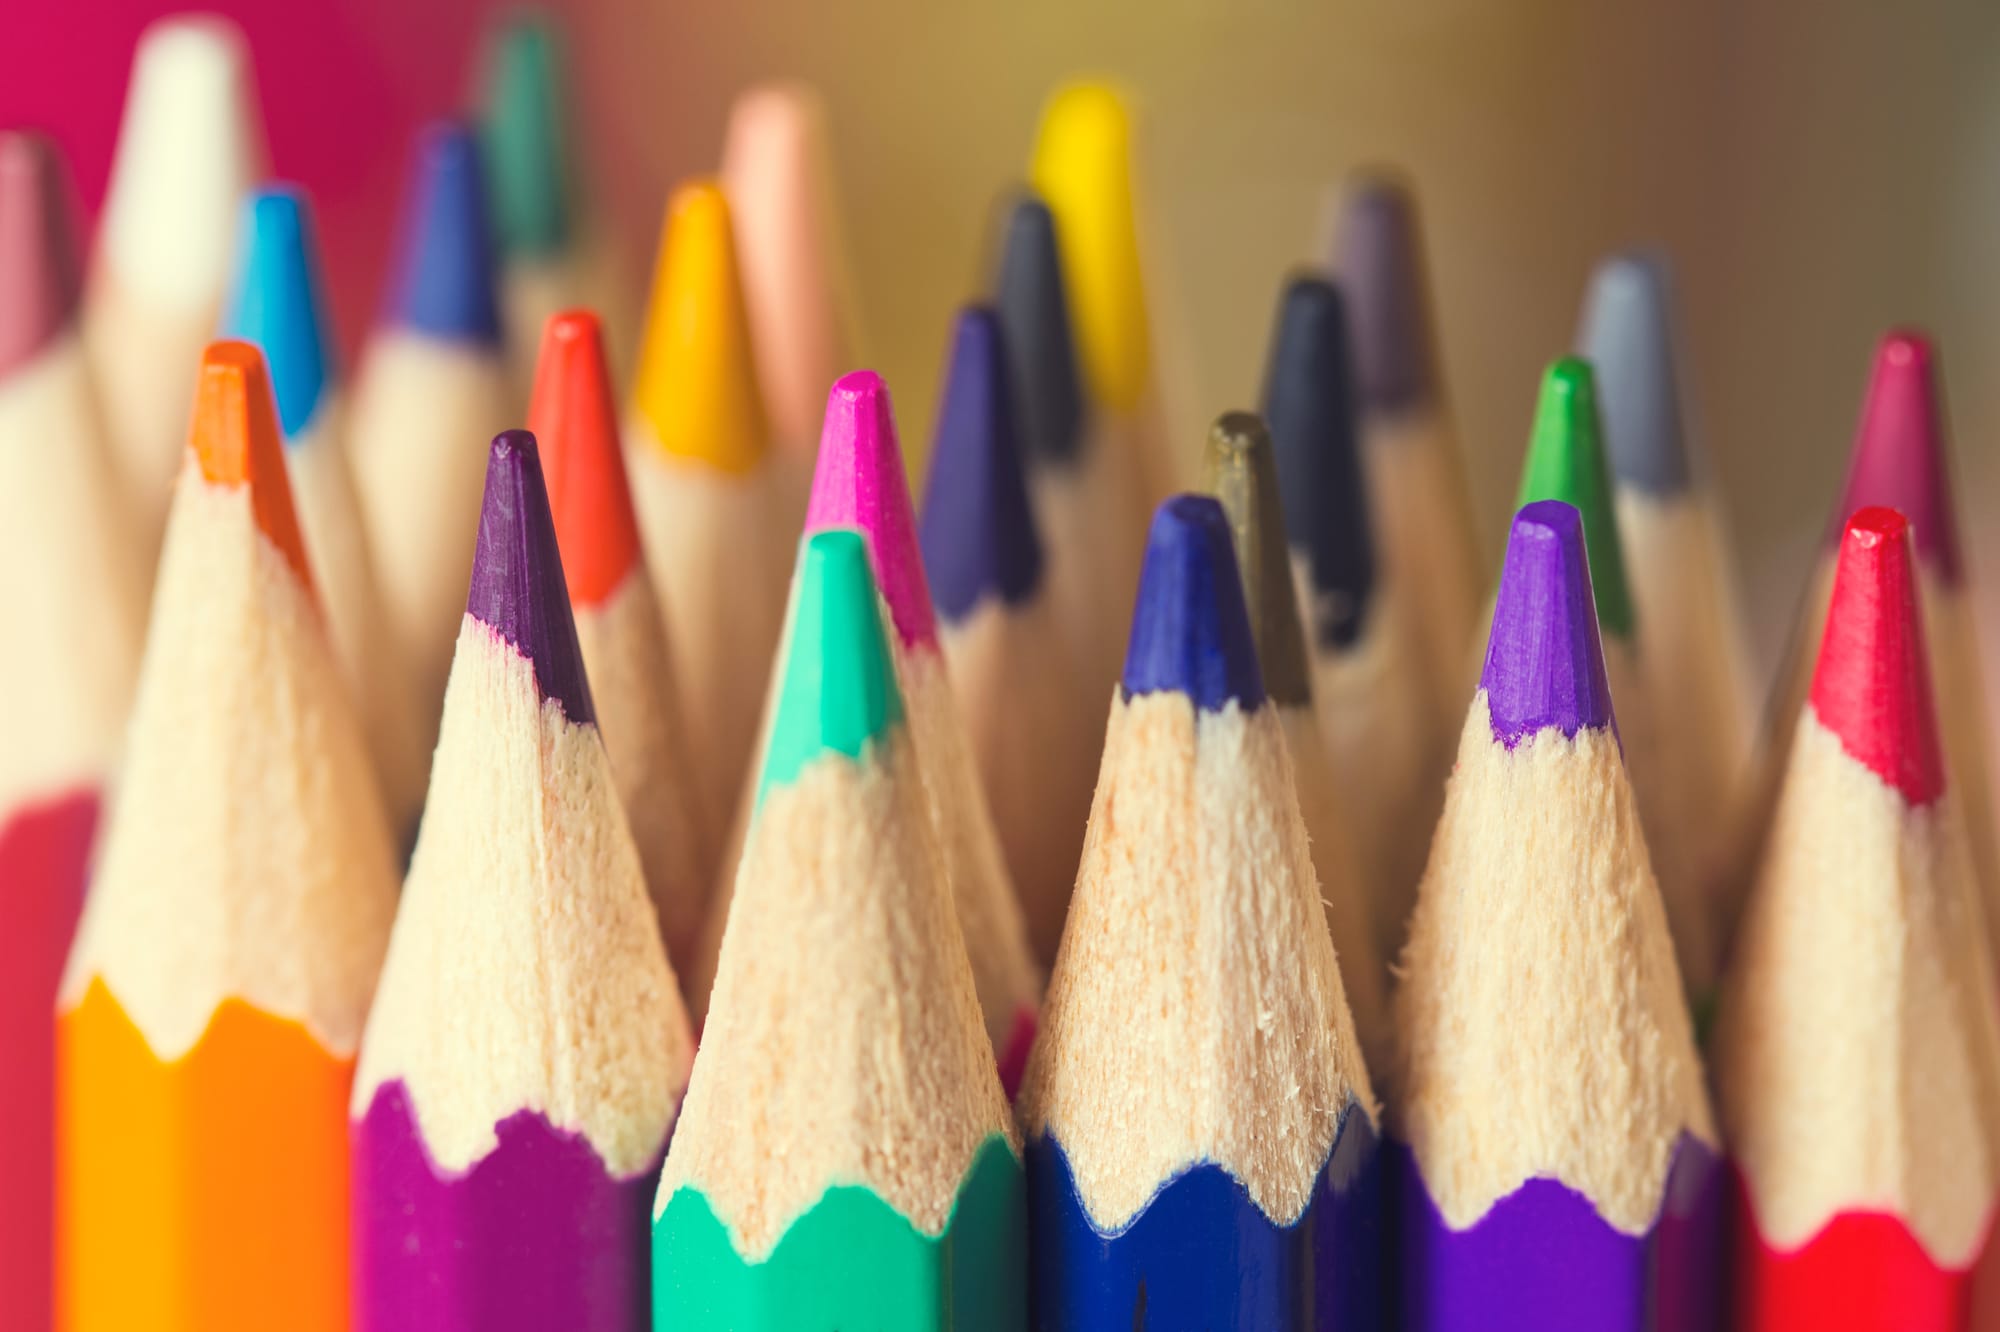 Colored pencils closeup